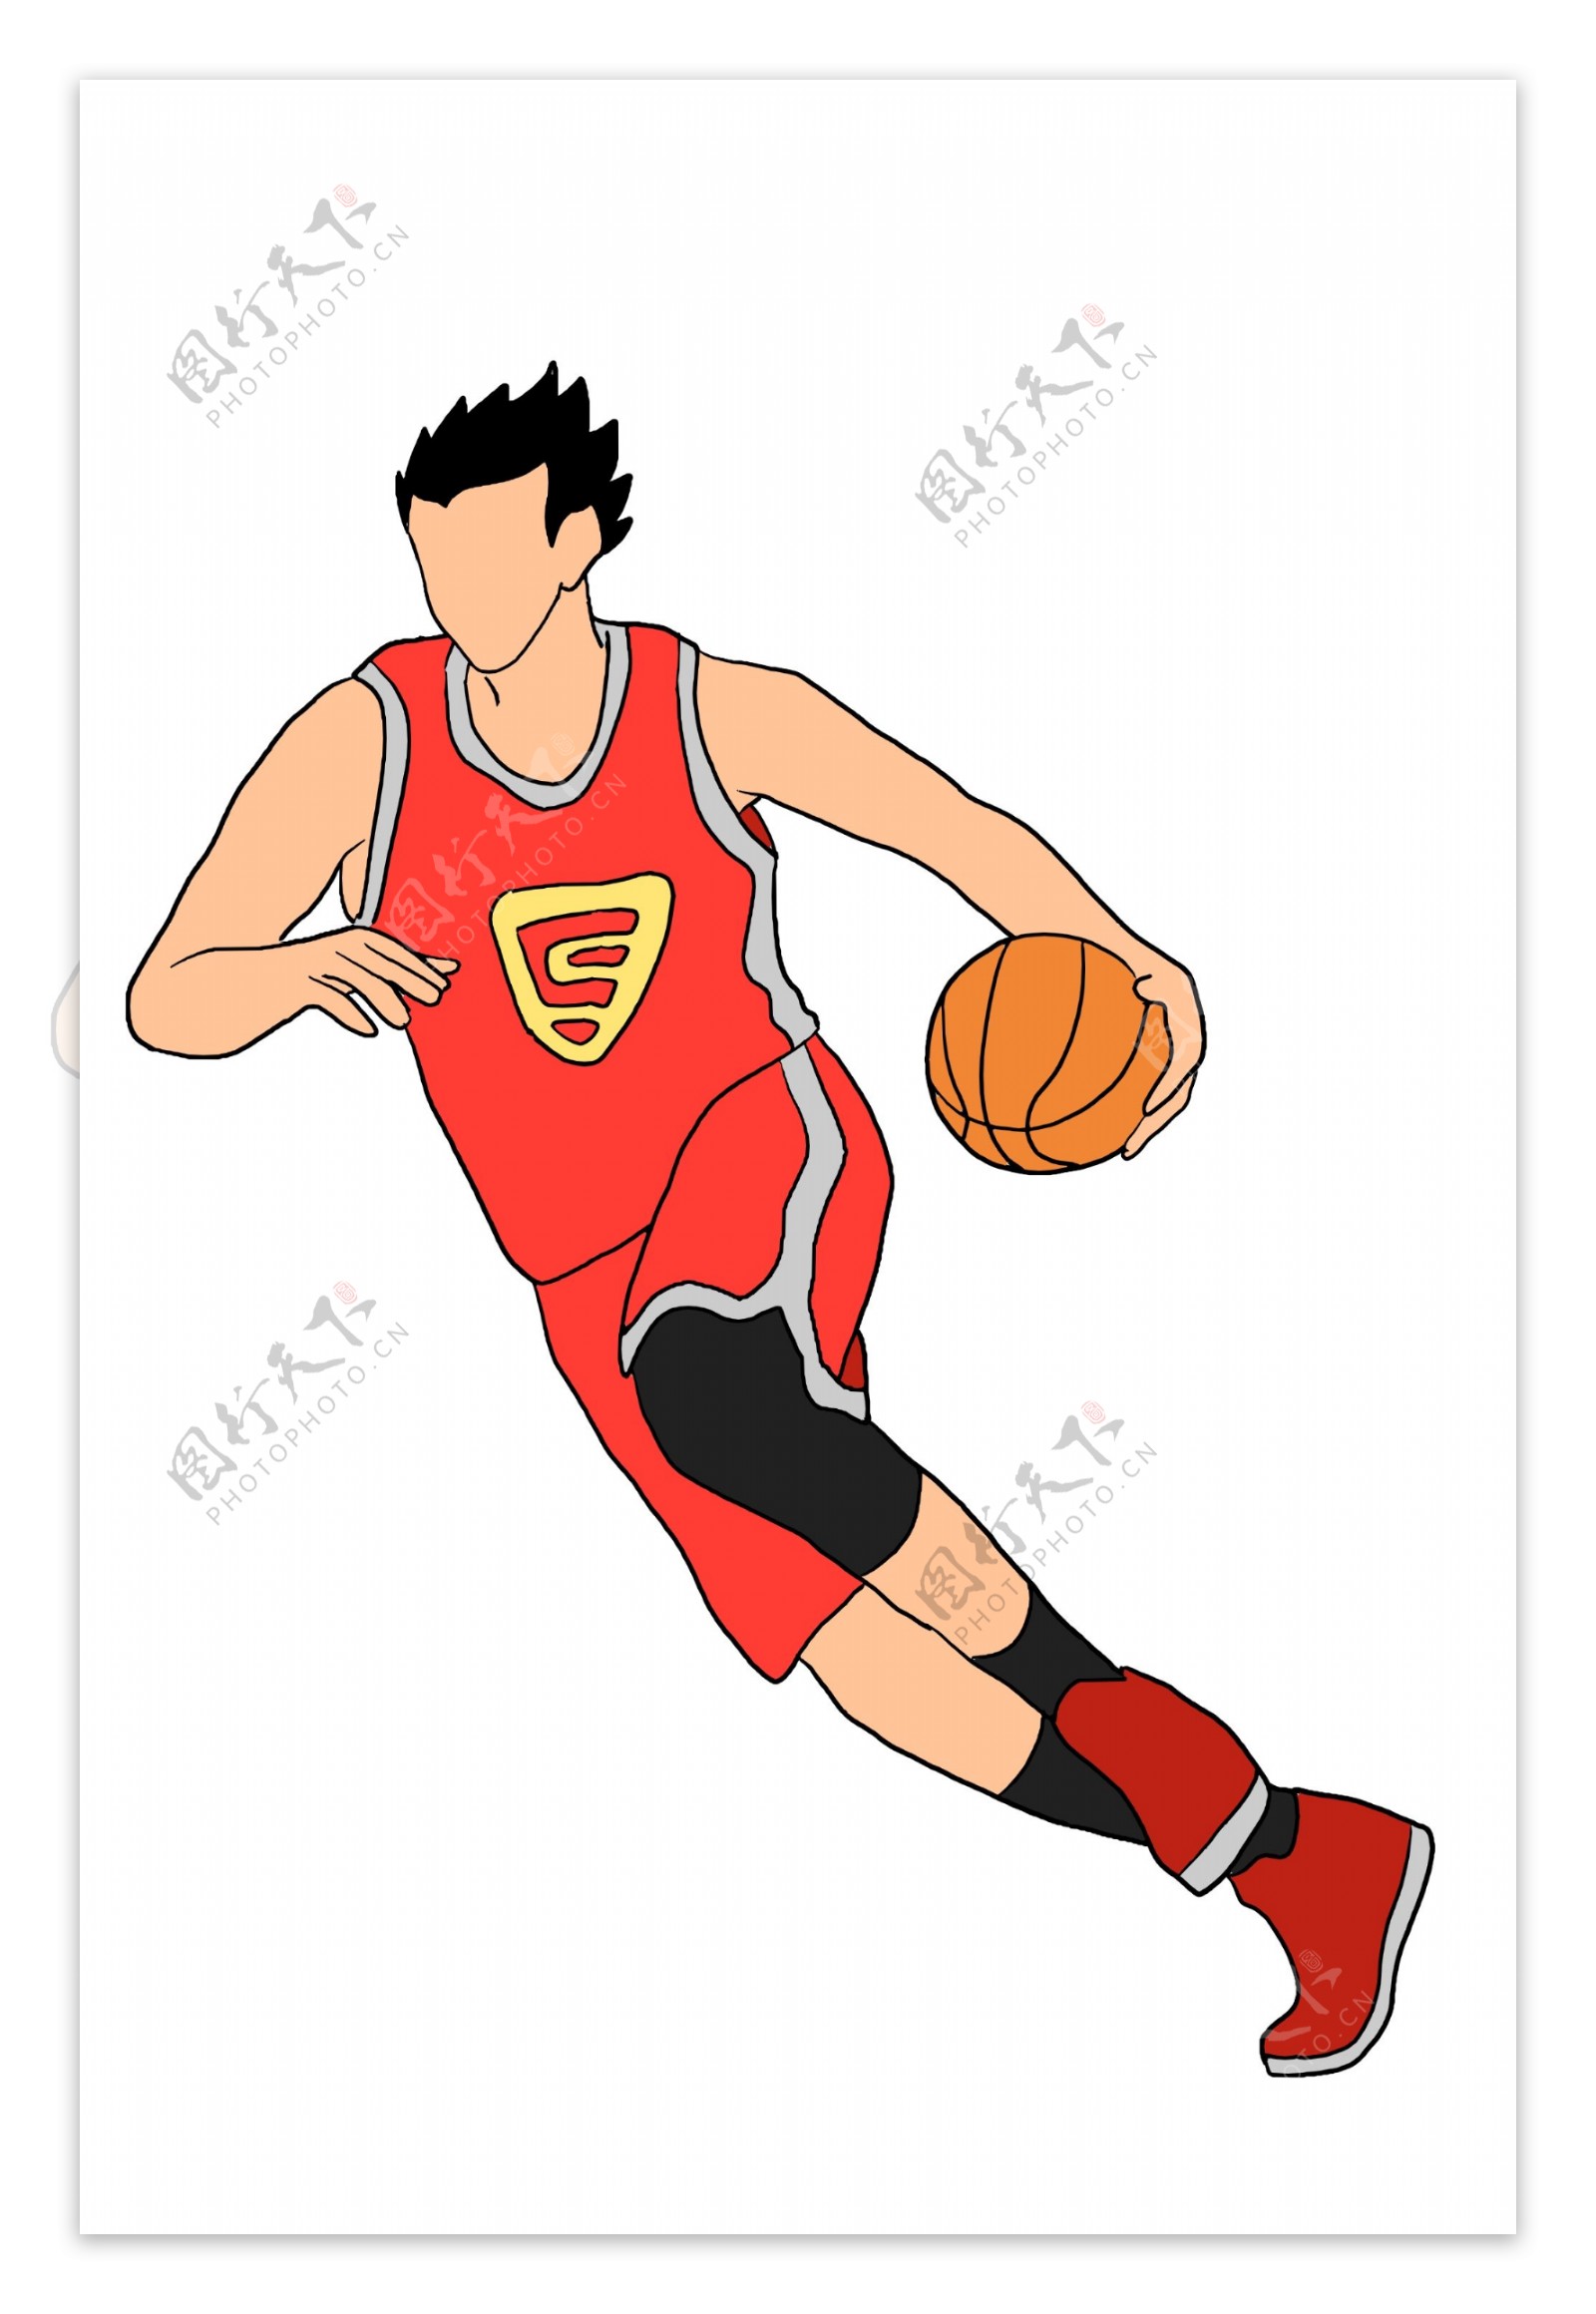 打篮球的男孩运动员插画